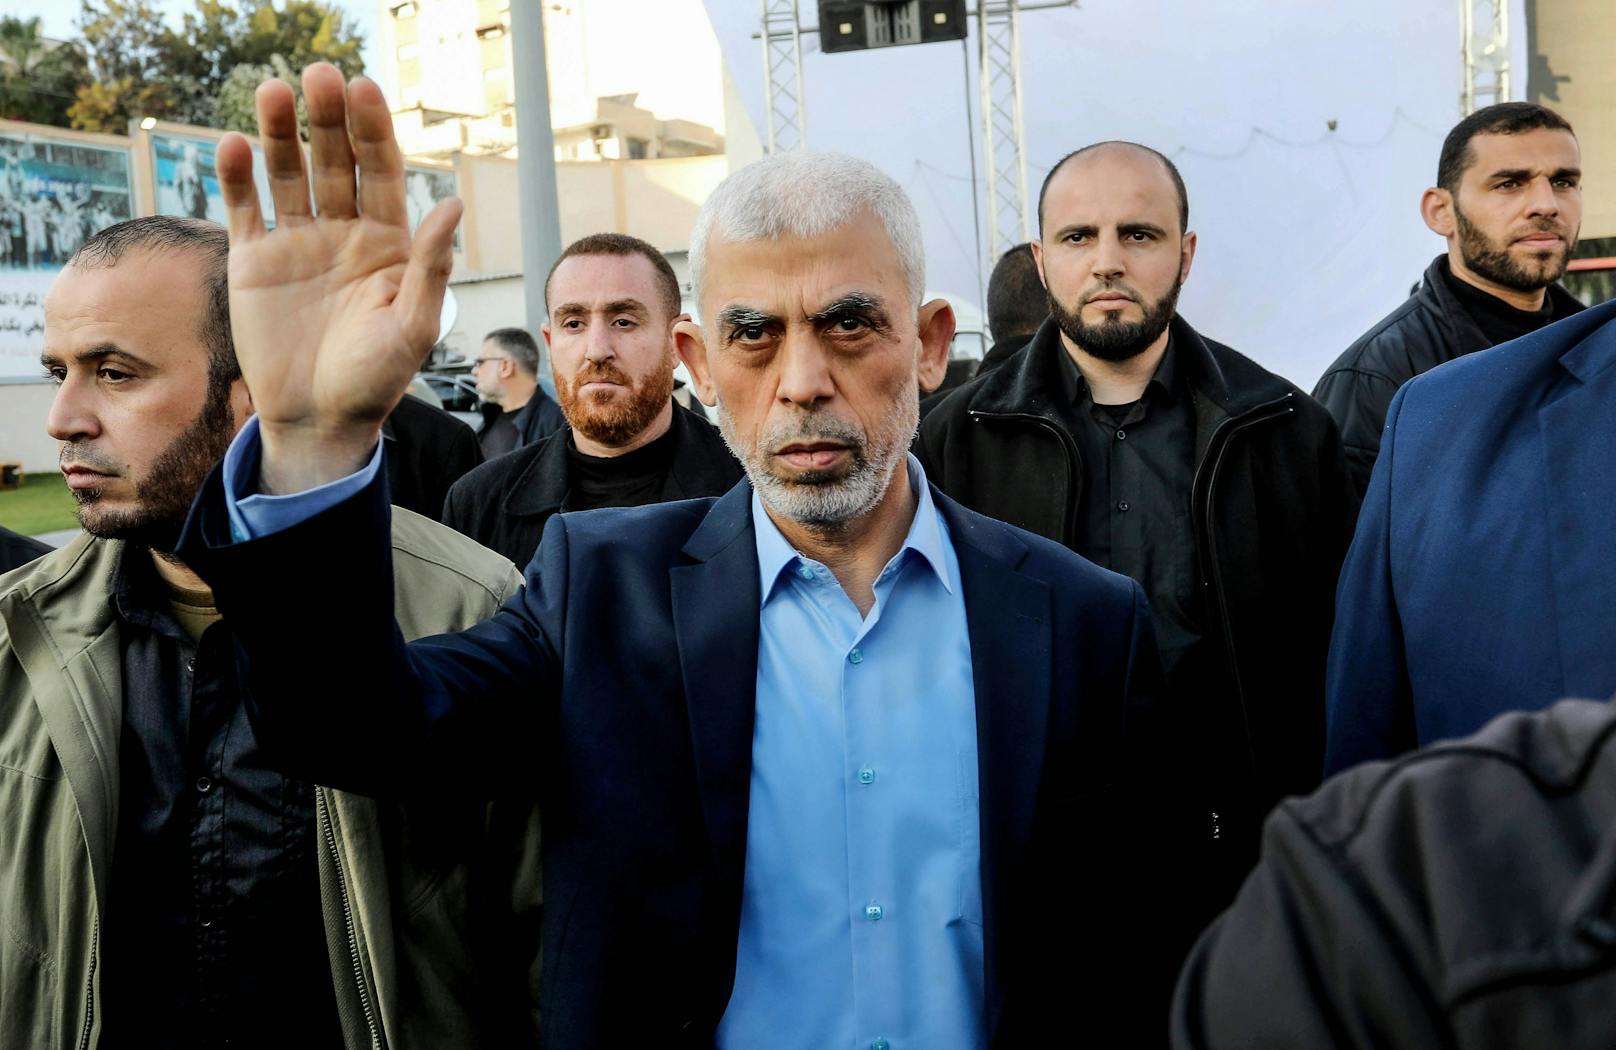 Yahya Sinwar ist der ranghöchste Hamas-Funktionär im Gazastreifen und de facto dessen Herrscher.